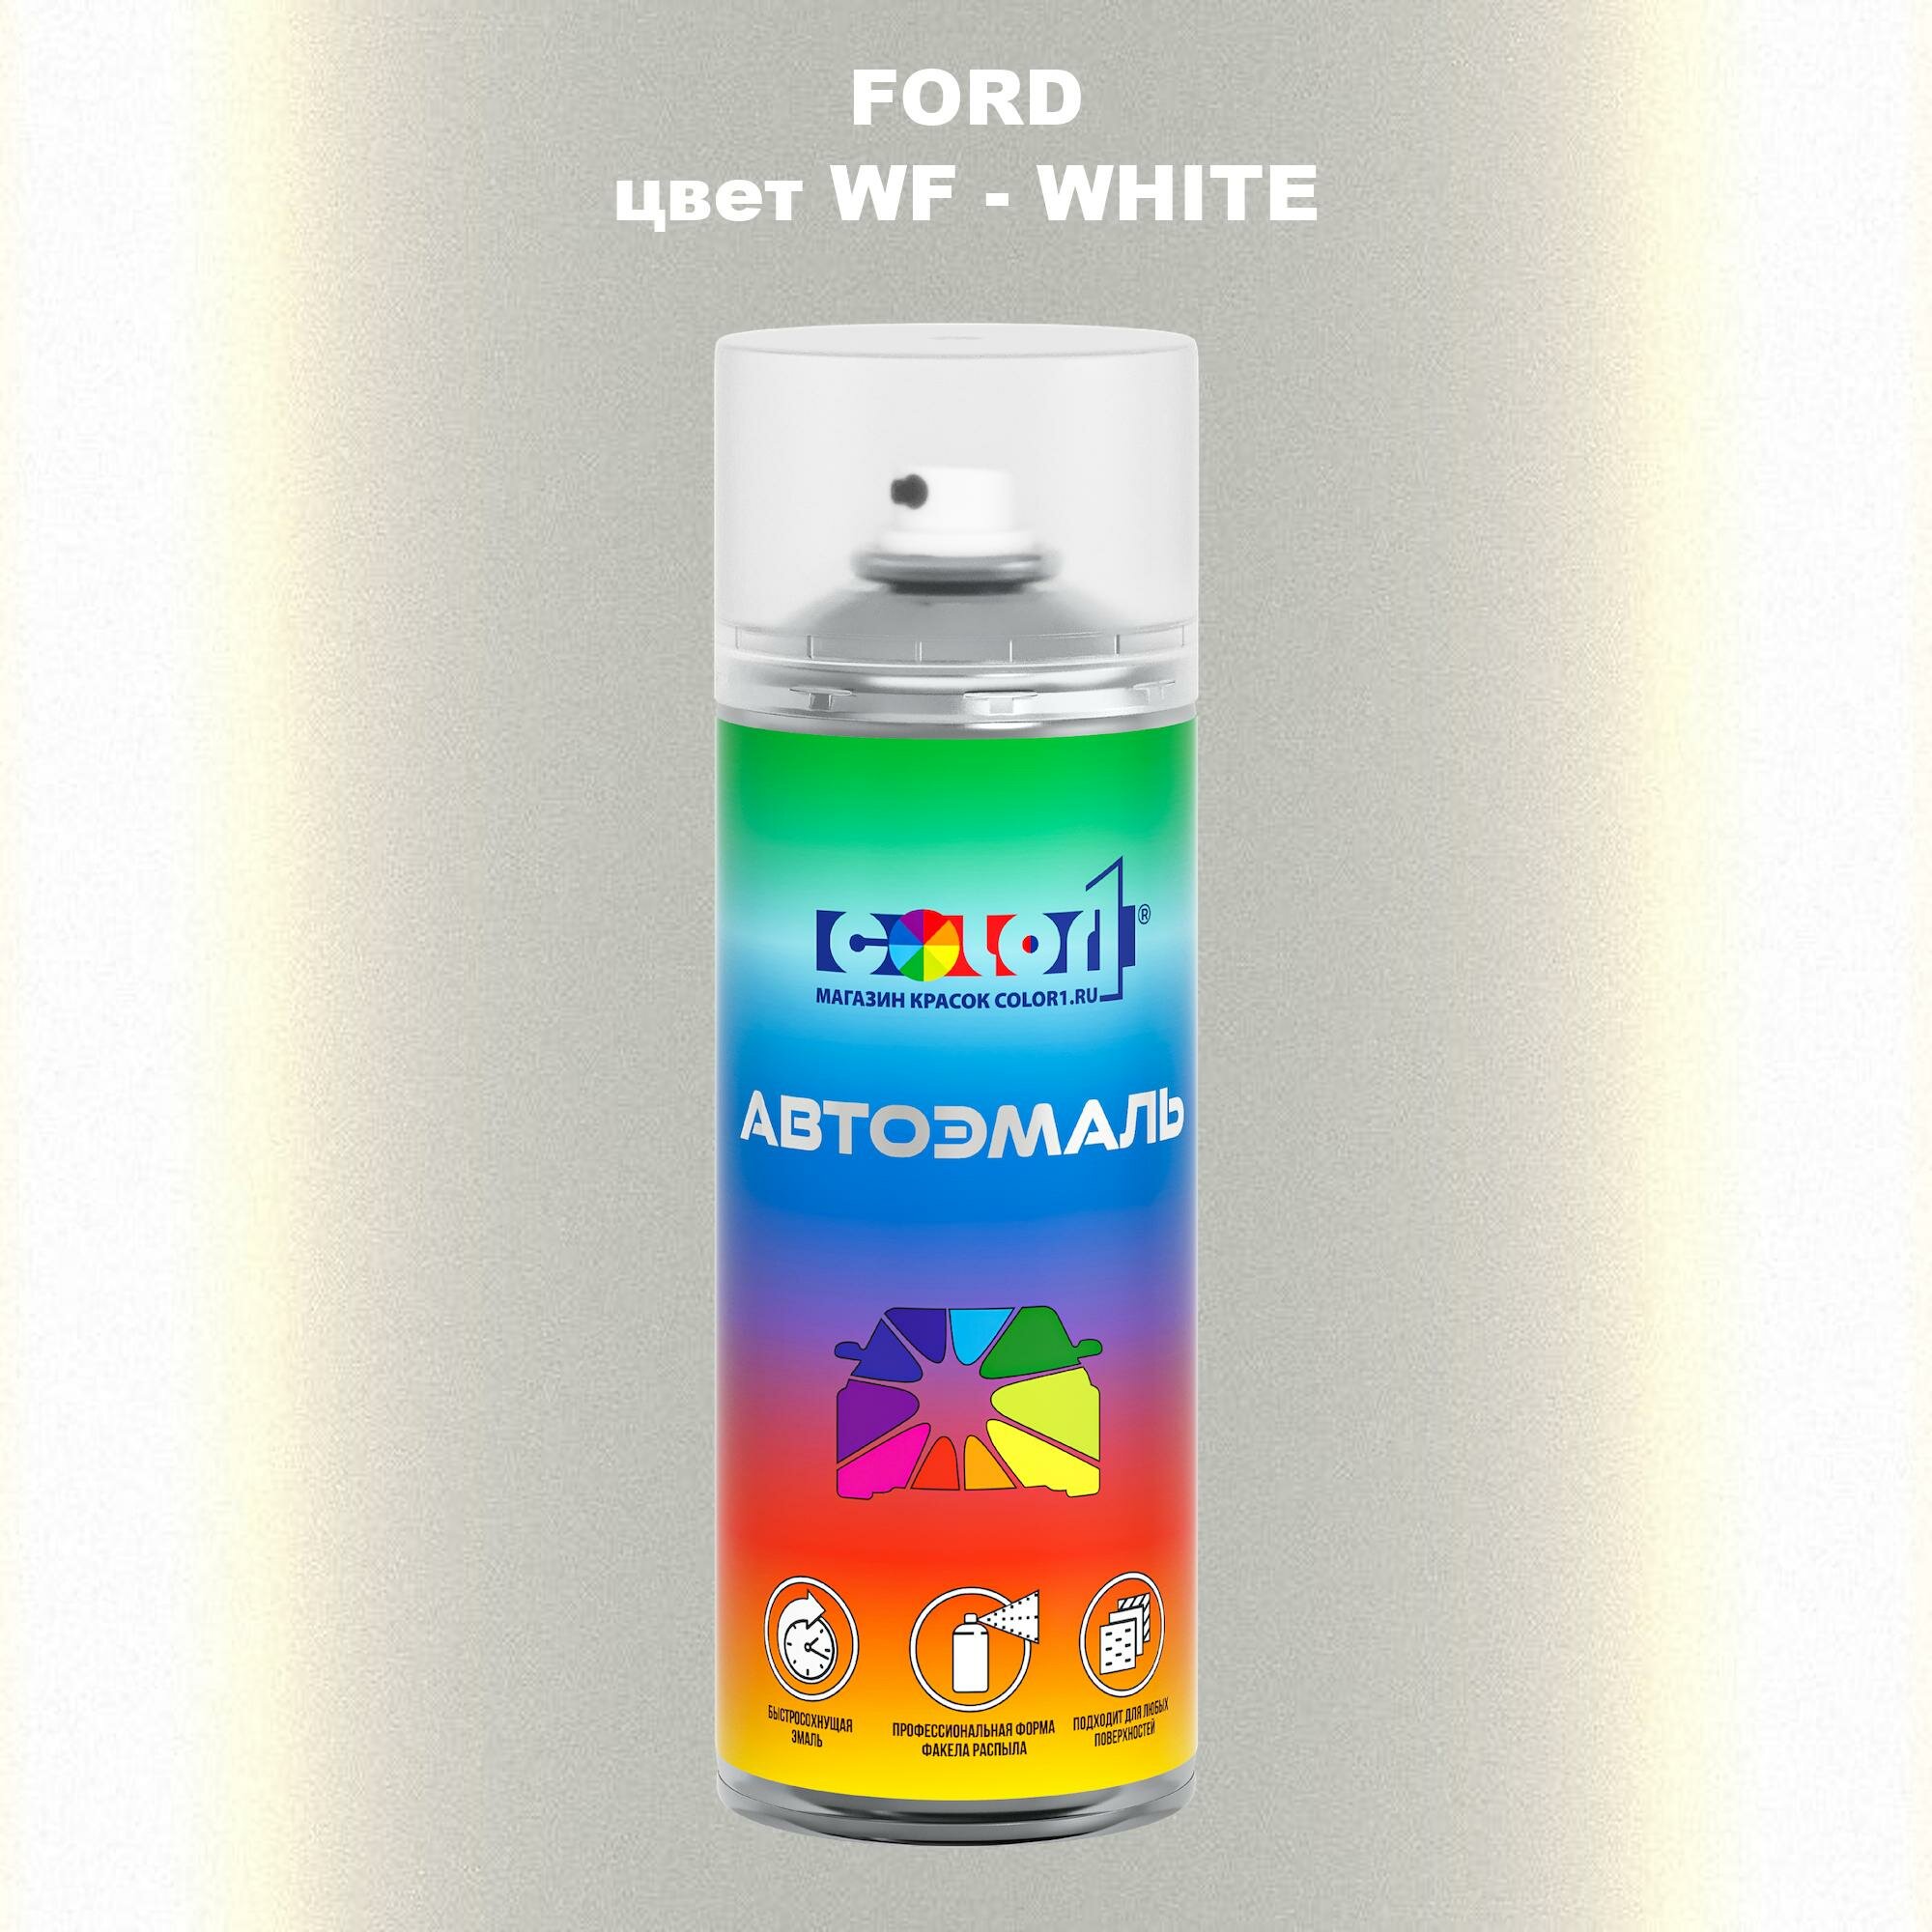 Аэрозольная краска COLOR1 для FORD, цвет WF - WHITE